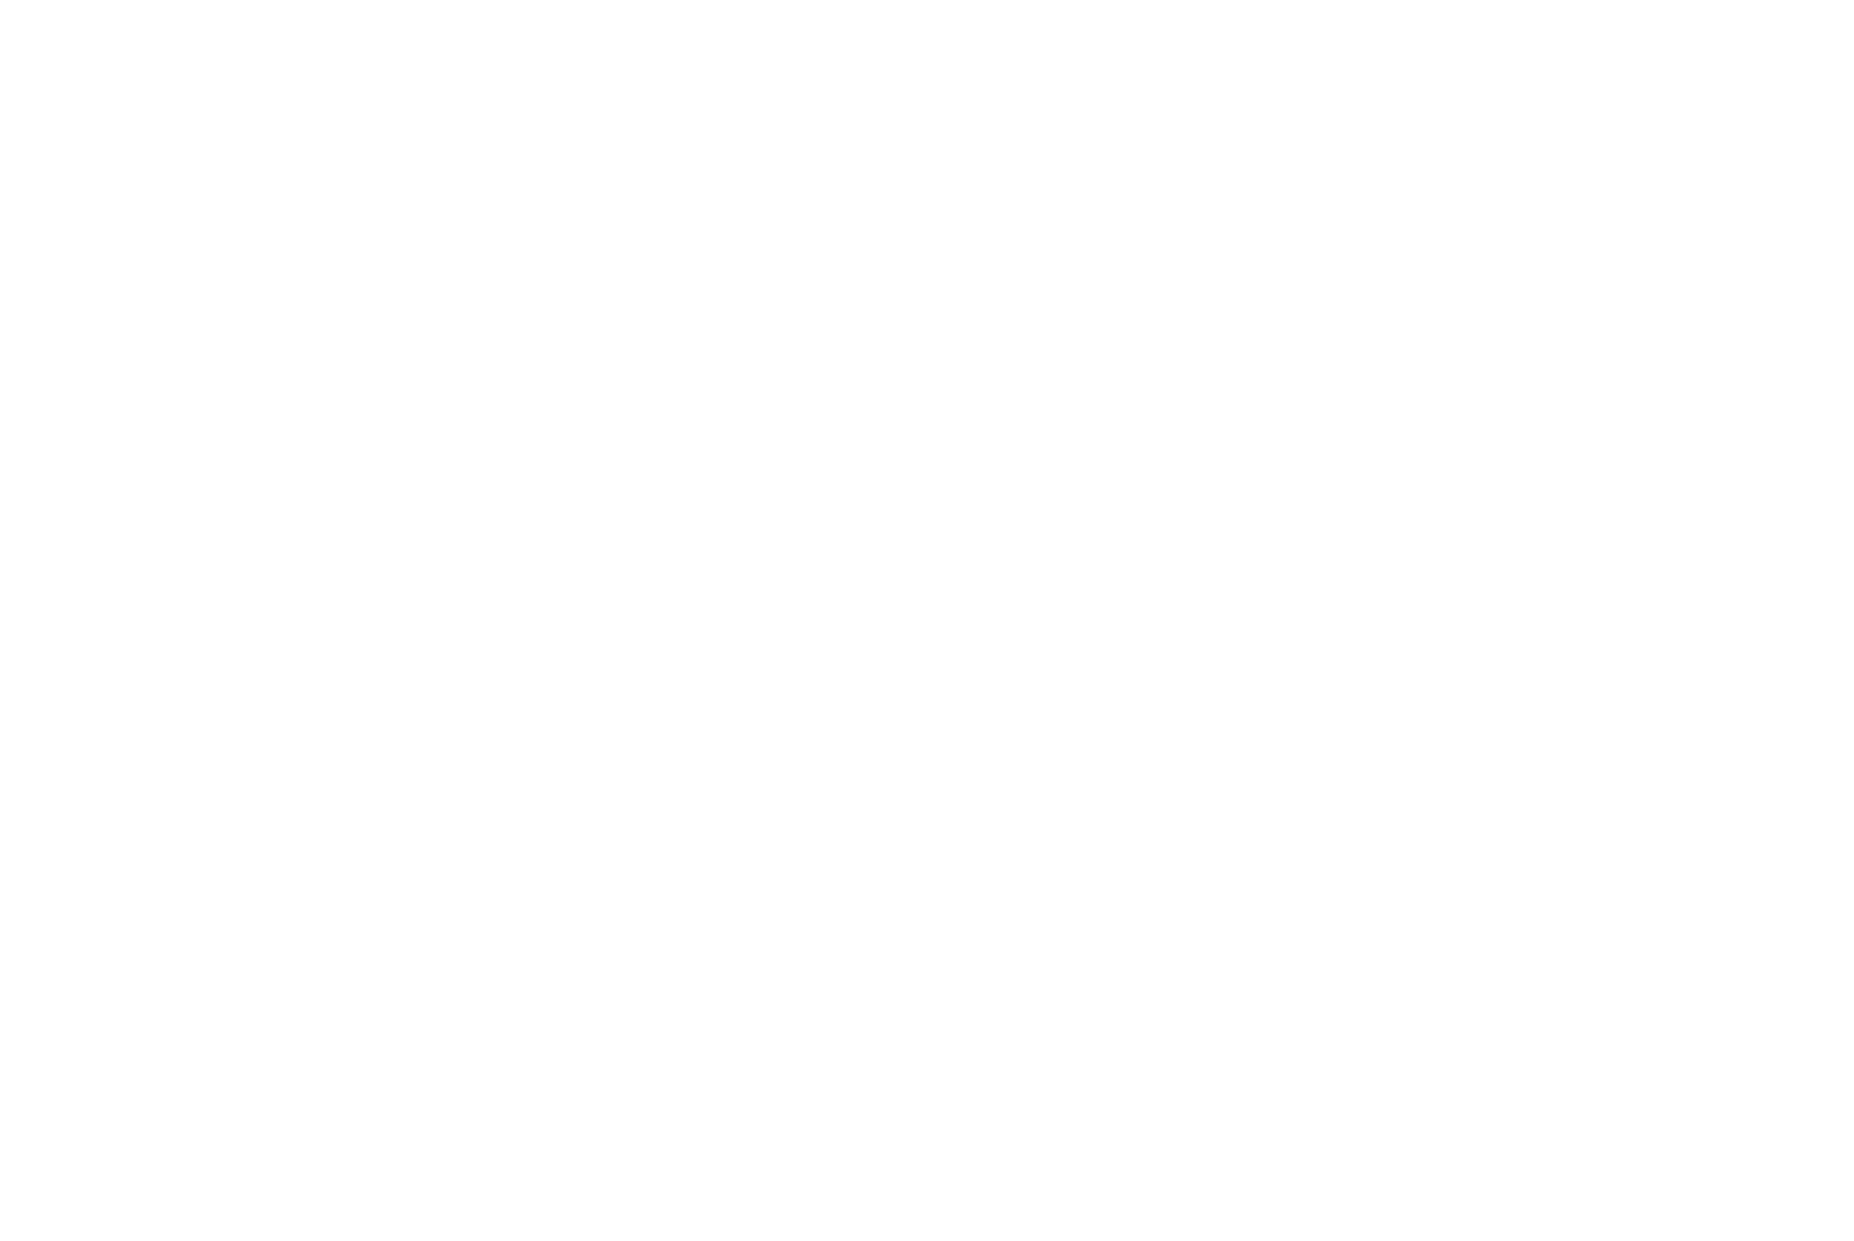 CSPSA Charter for Parents